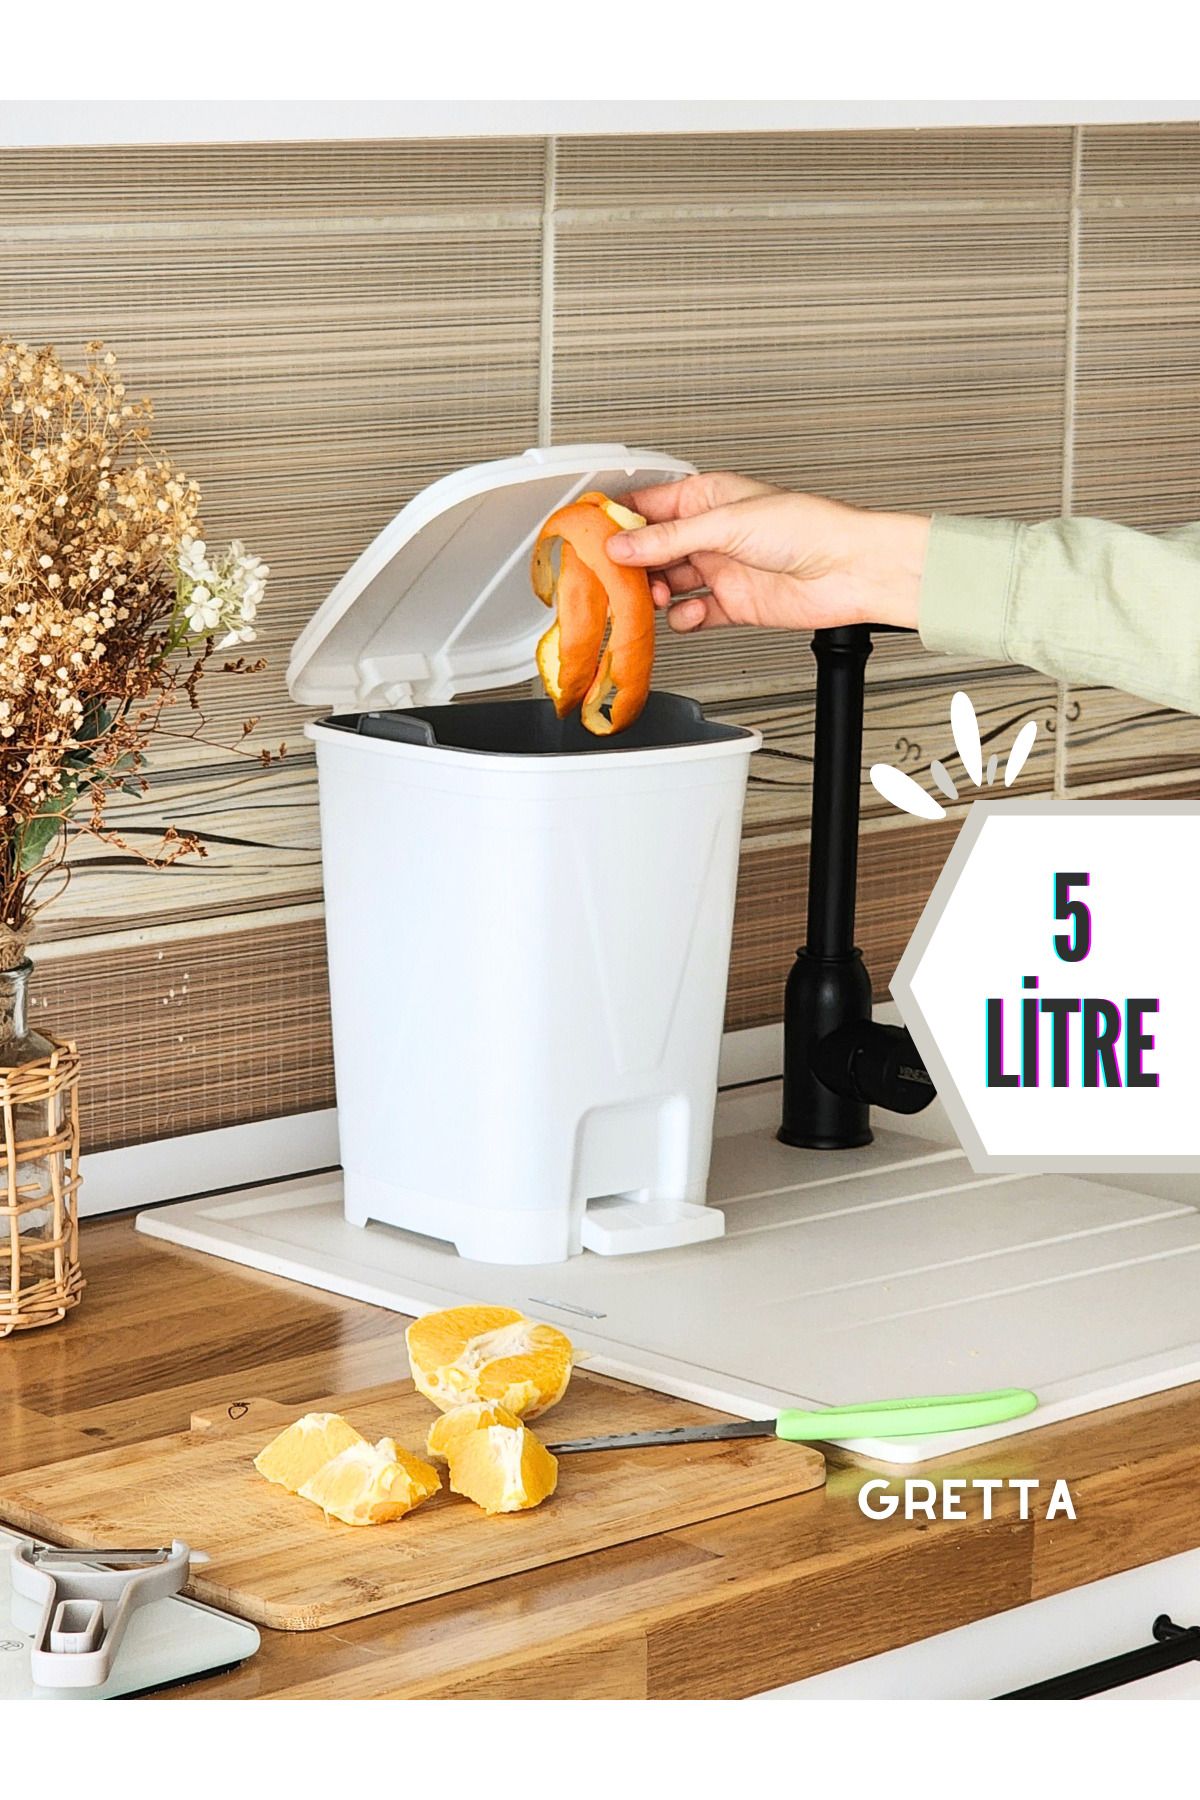 Gretta 5 Litre Beyaz Kare Pedallı Çöp Kovası - Mutfak Tezgah Üstü, Banyo Ve Ofis Için Çöp Kovası